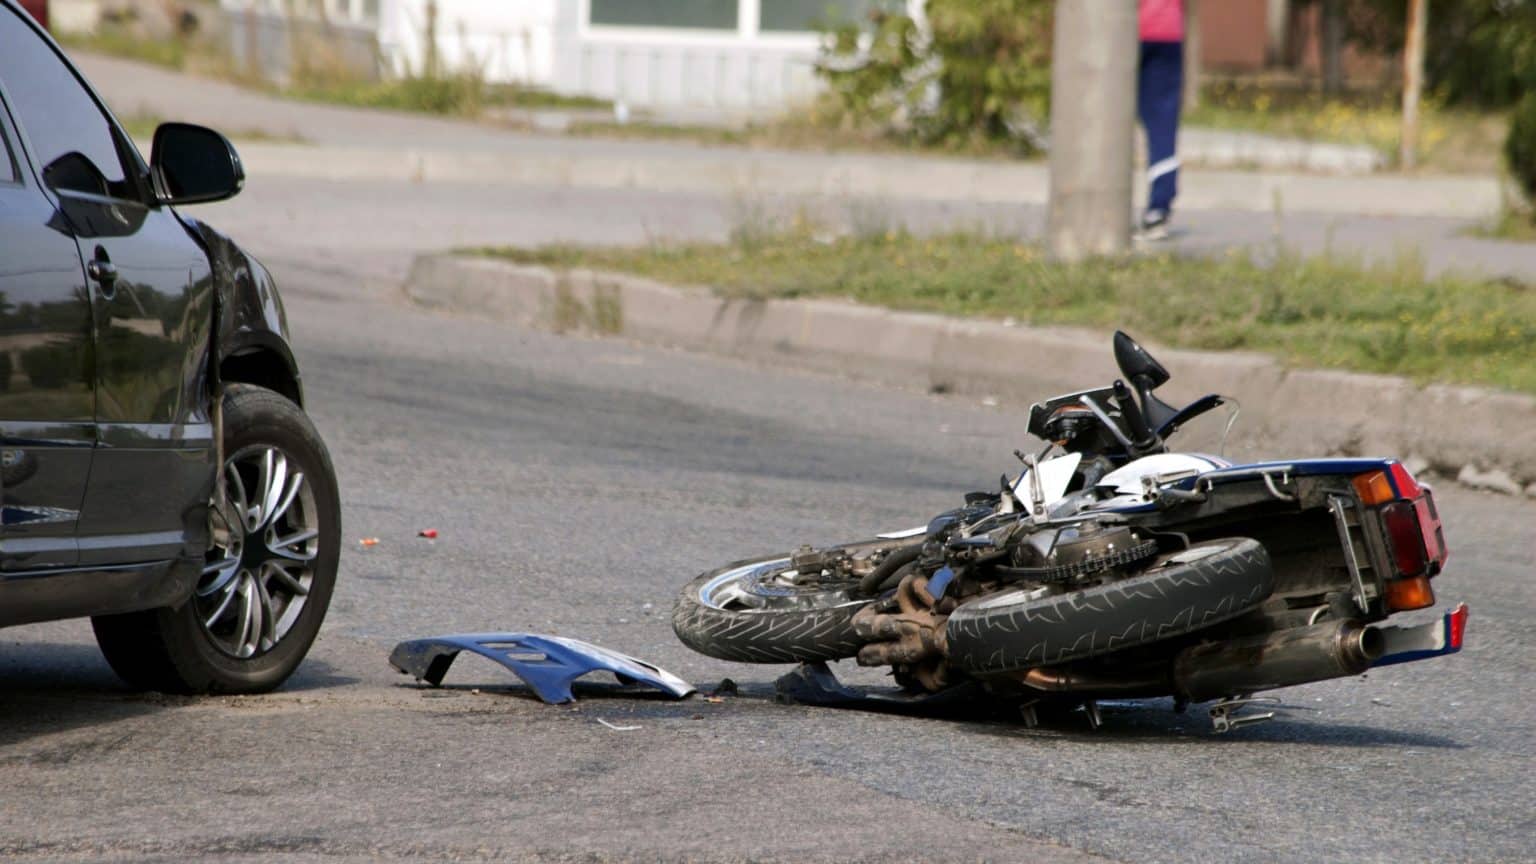 Tragična prometna nesreća u Omišu: Jedna osoba preminula, druga teško ozlijeđena